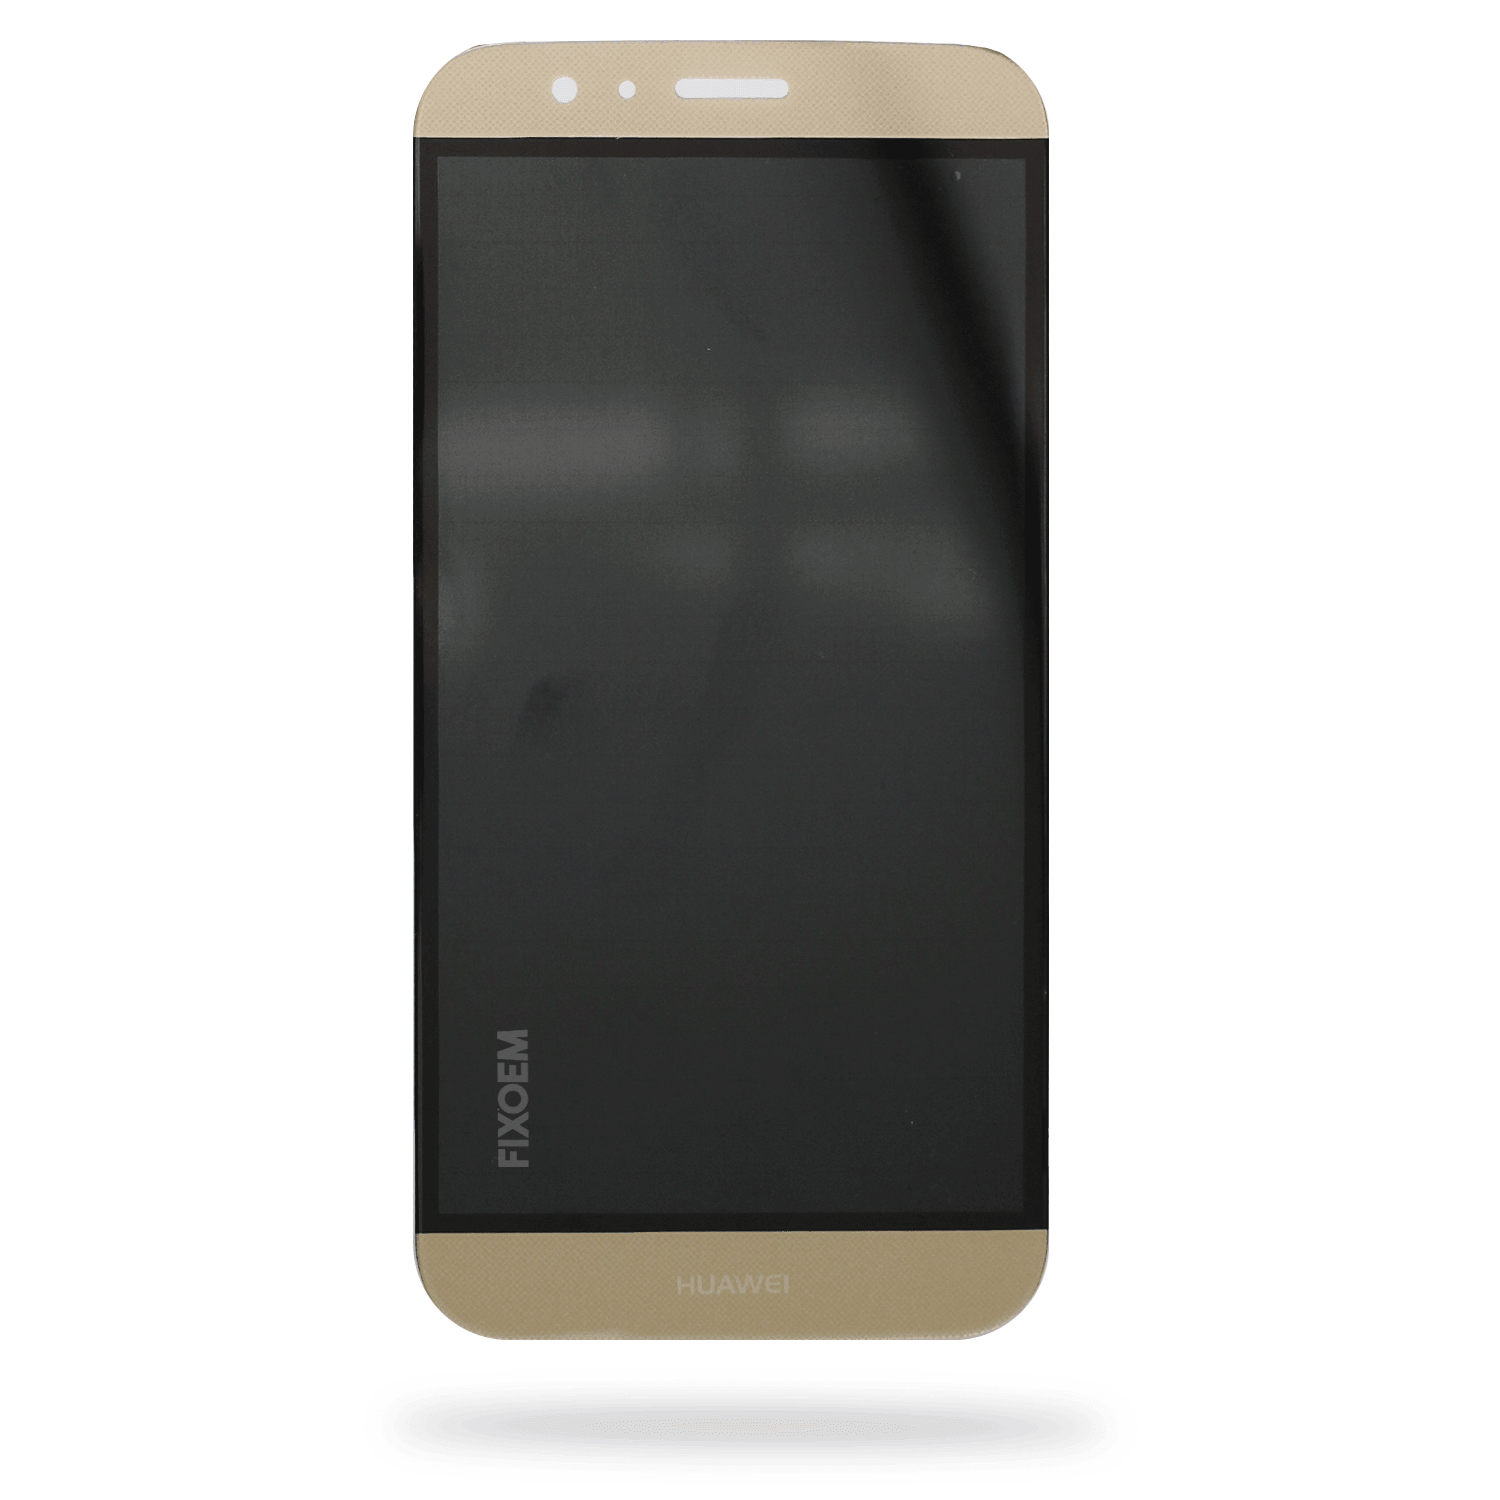 Display Huawei Honor Gx8 Rio-L03 IPS a solo $ 240.00 Refaccion y puestos celulares, refurbish y microelectronica.- FixOEM